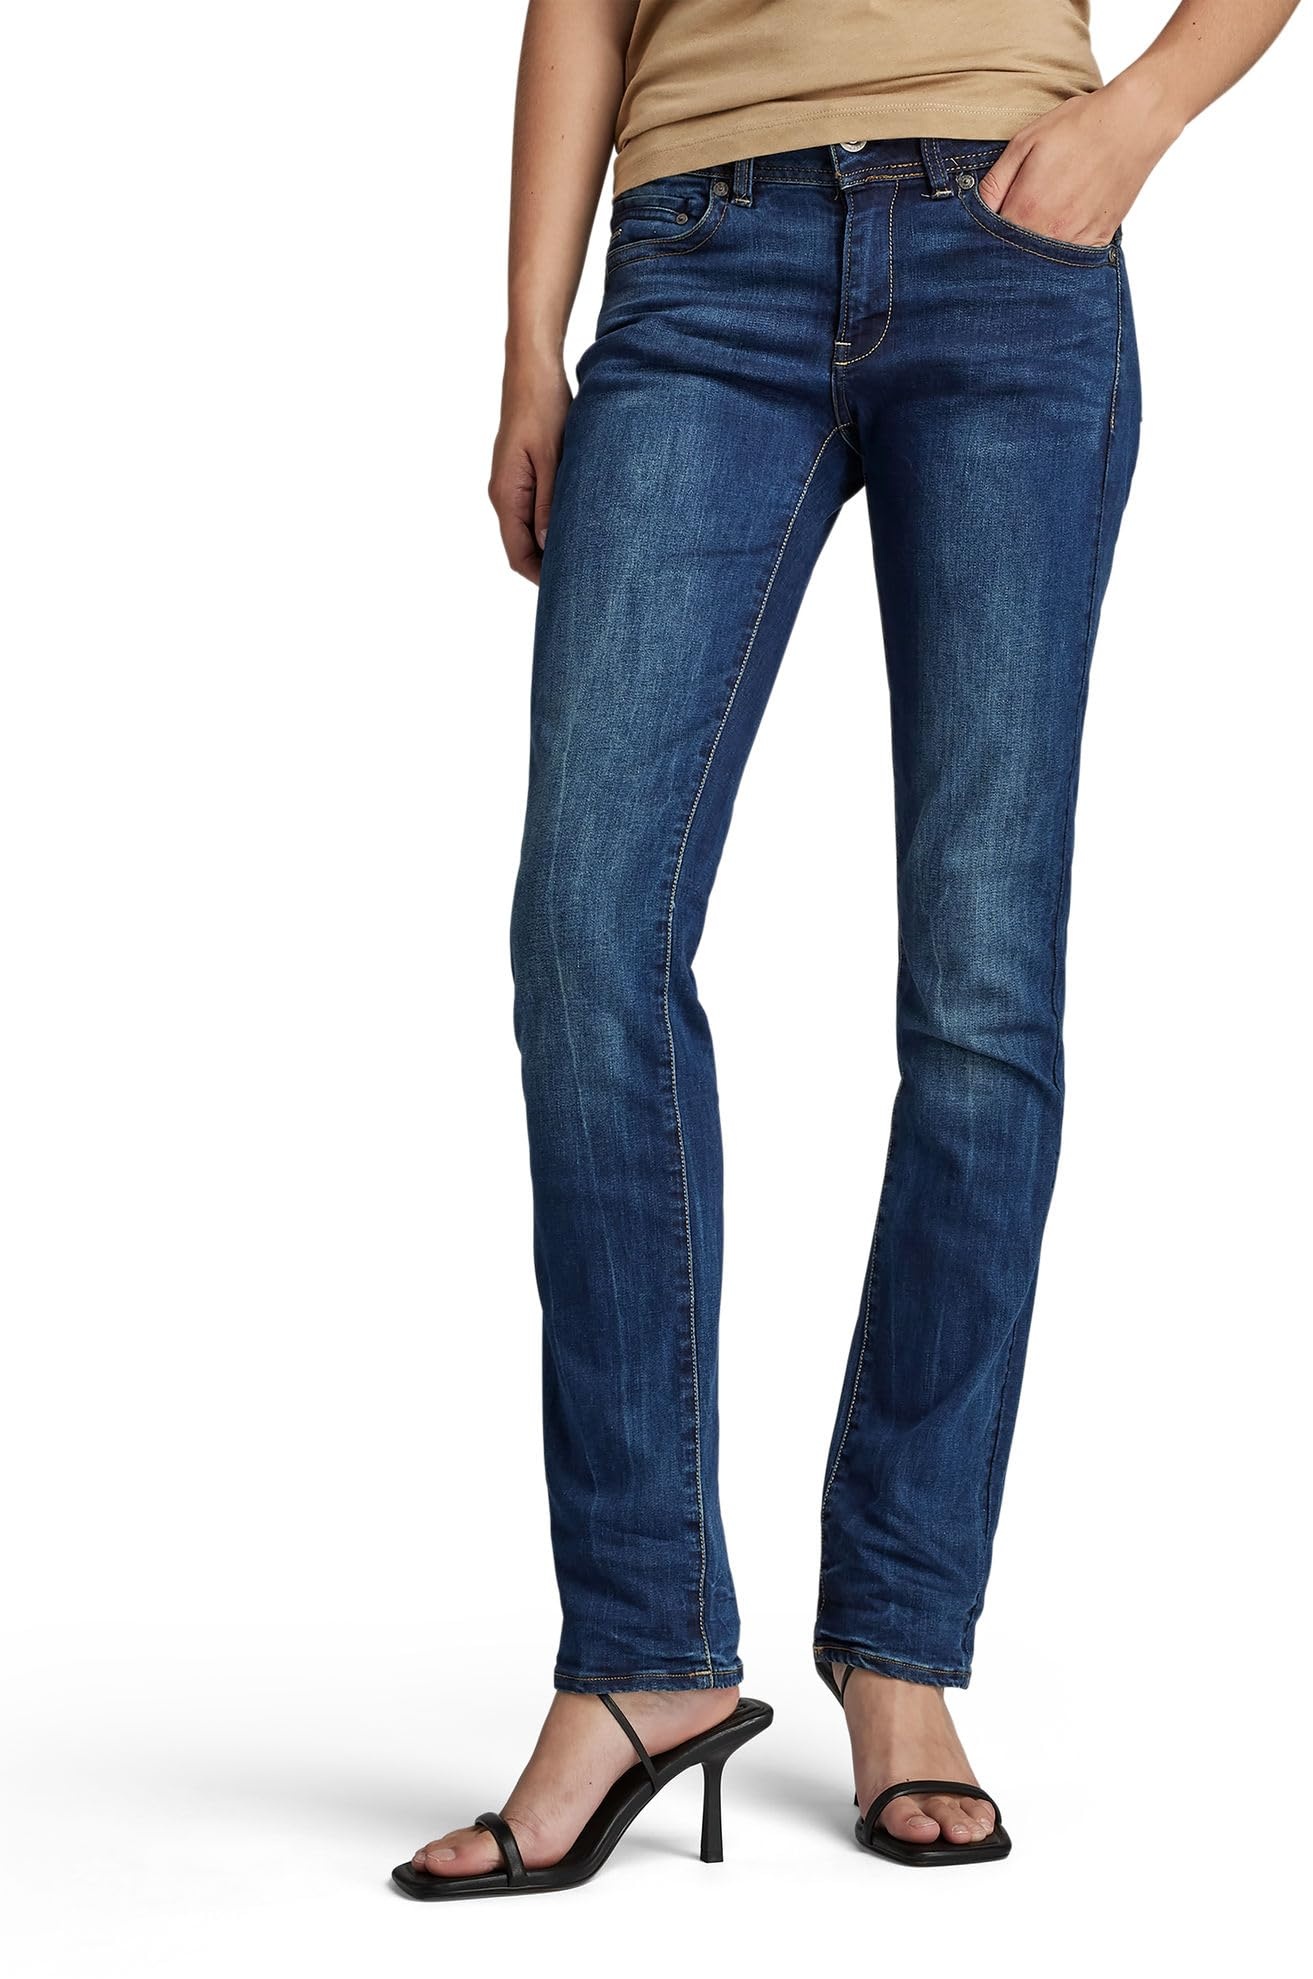 G-STAR RAW Damen Midge Saddle Straight Jeans, Blau (dk aged D02153-6553-89), 26W / 30L